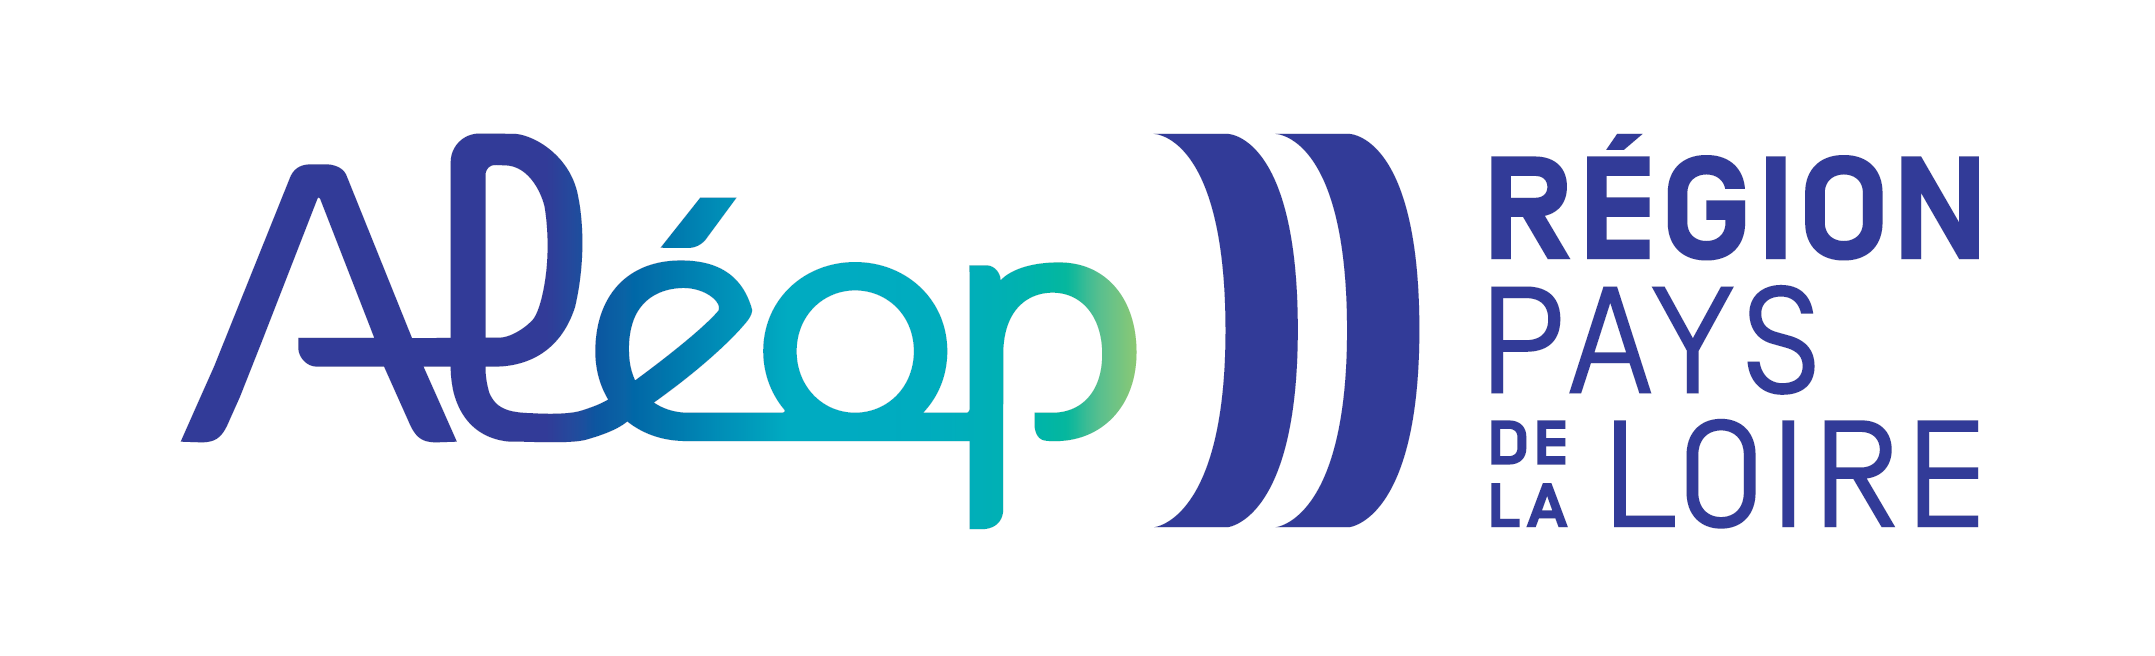 Logo Aléop